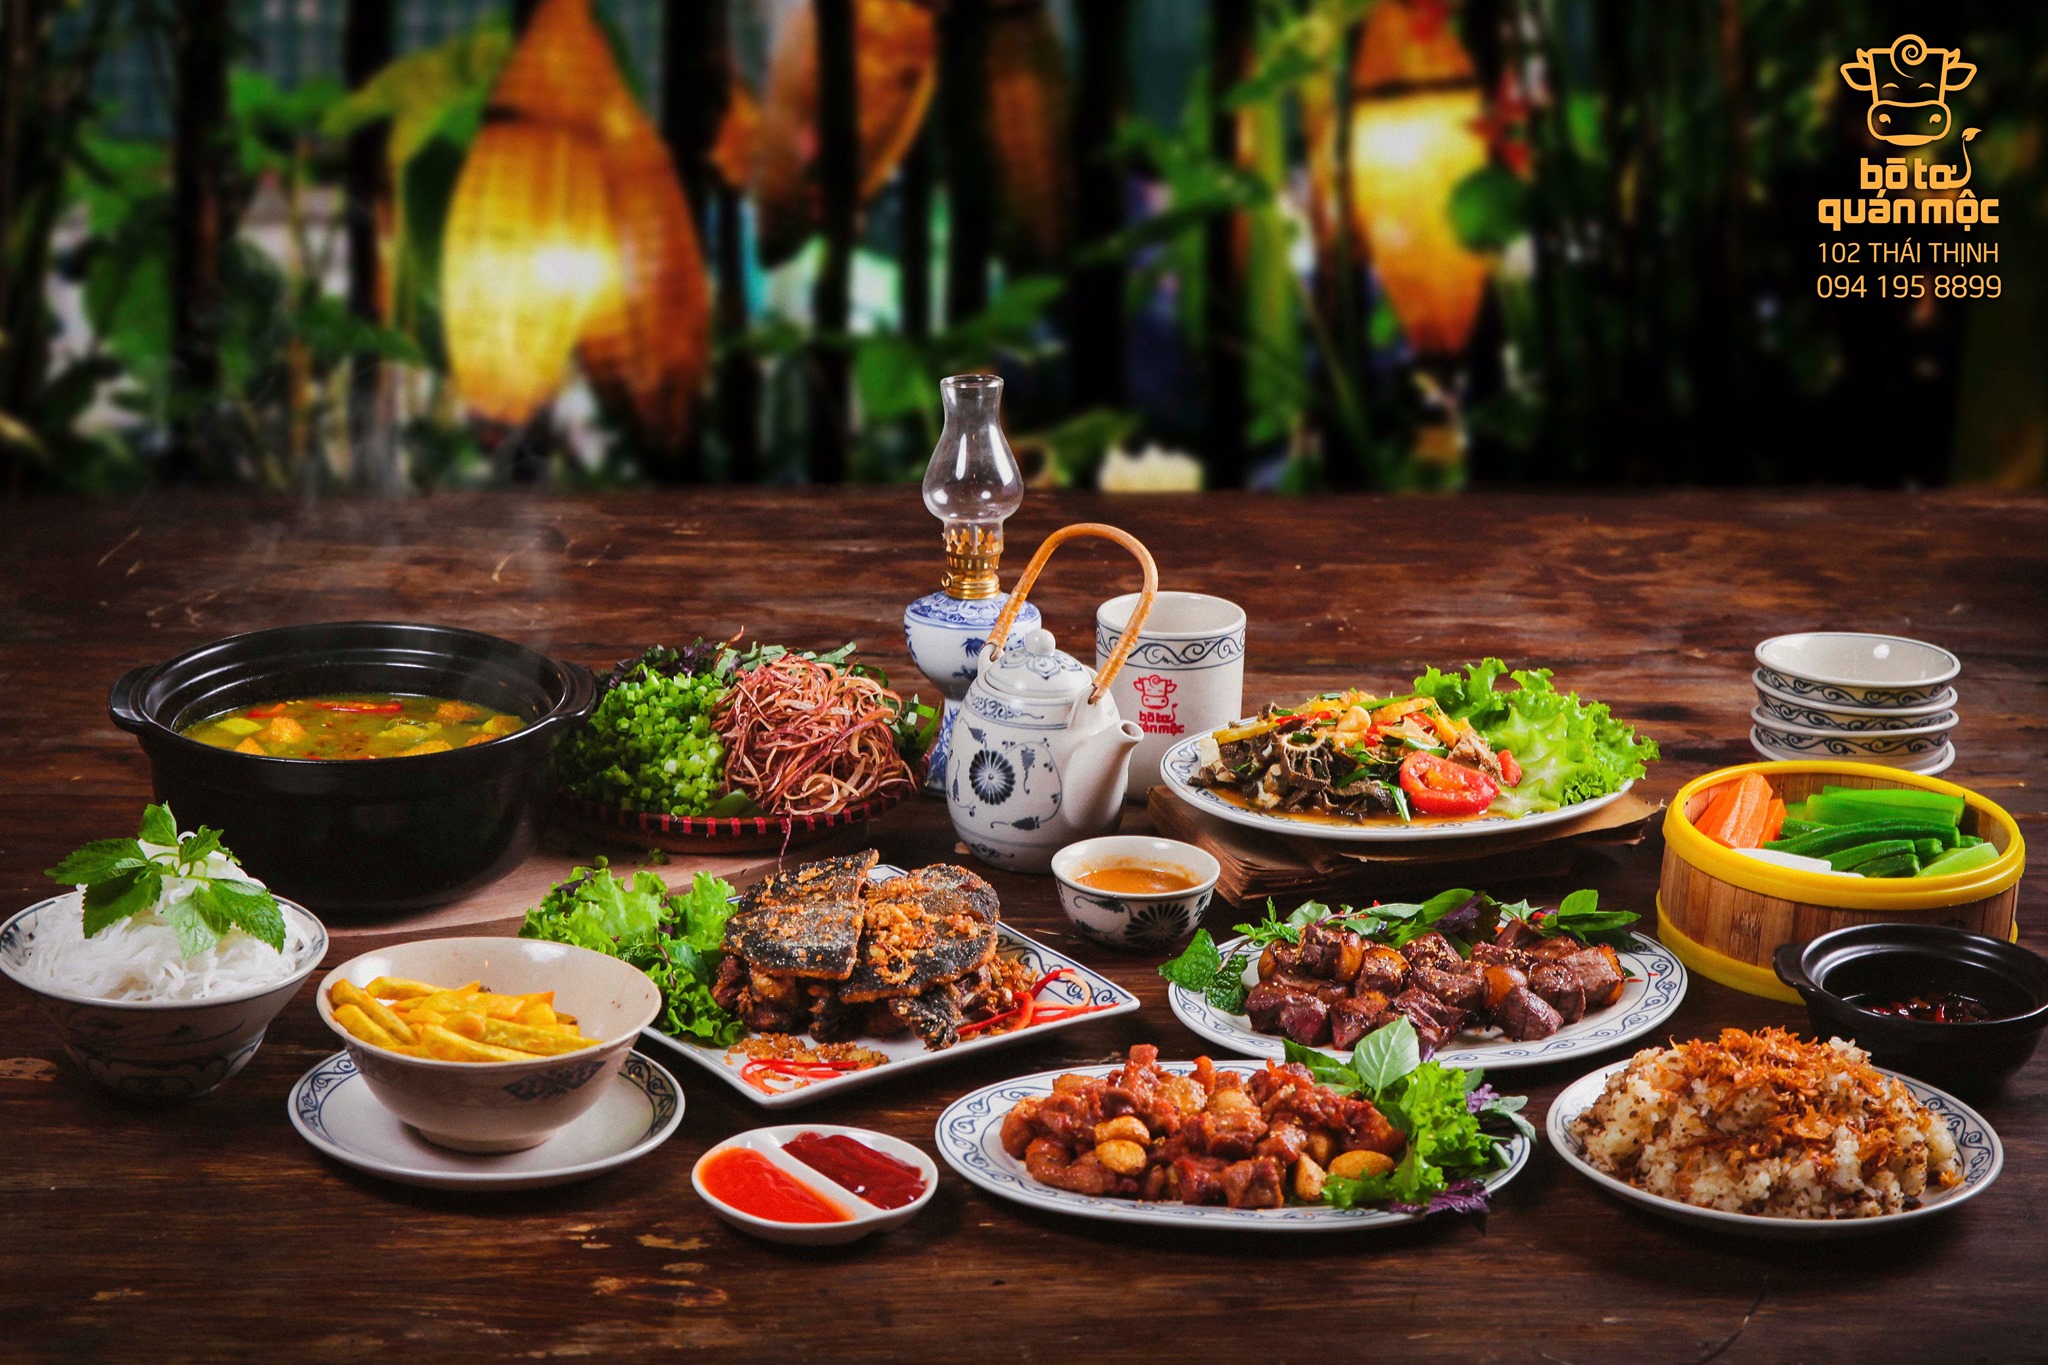 Điểm danh những nhà hàng, quán nhậu rẻ cho nhóm ở Hà Nội cực chất